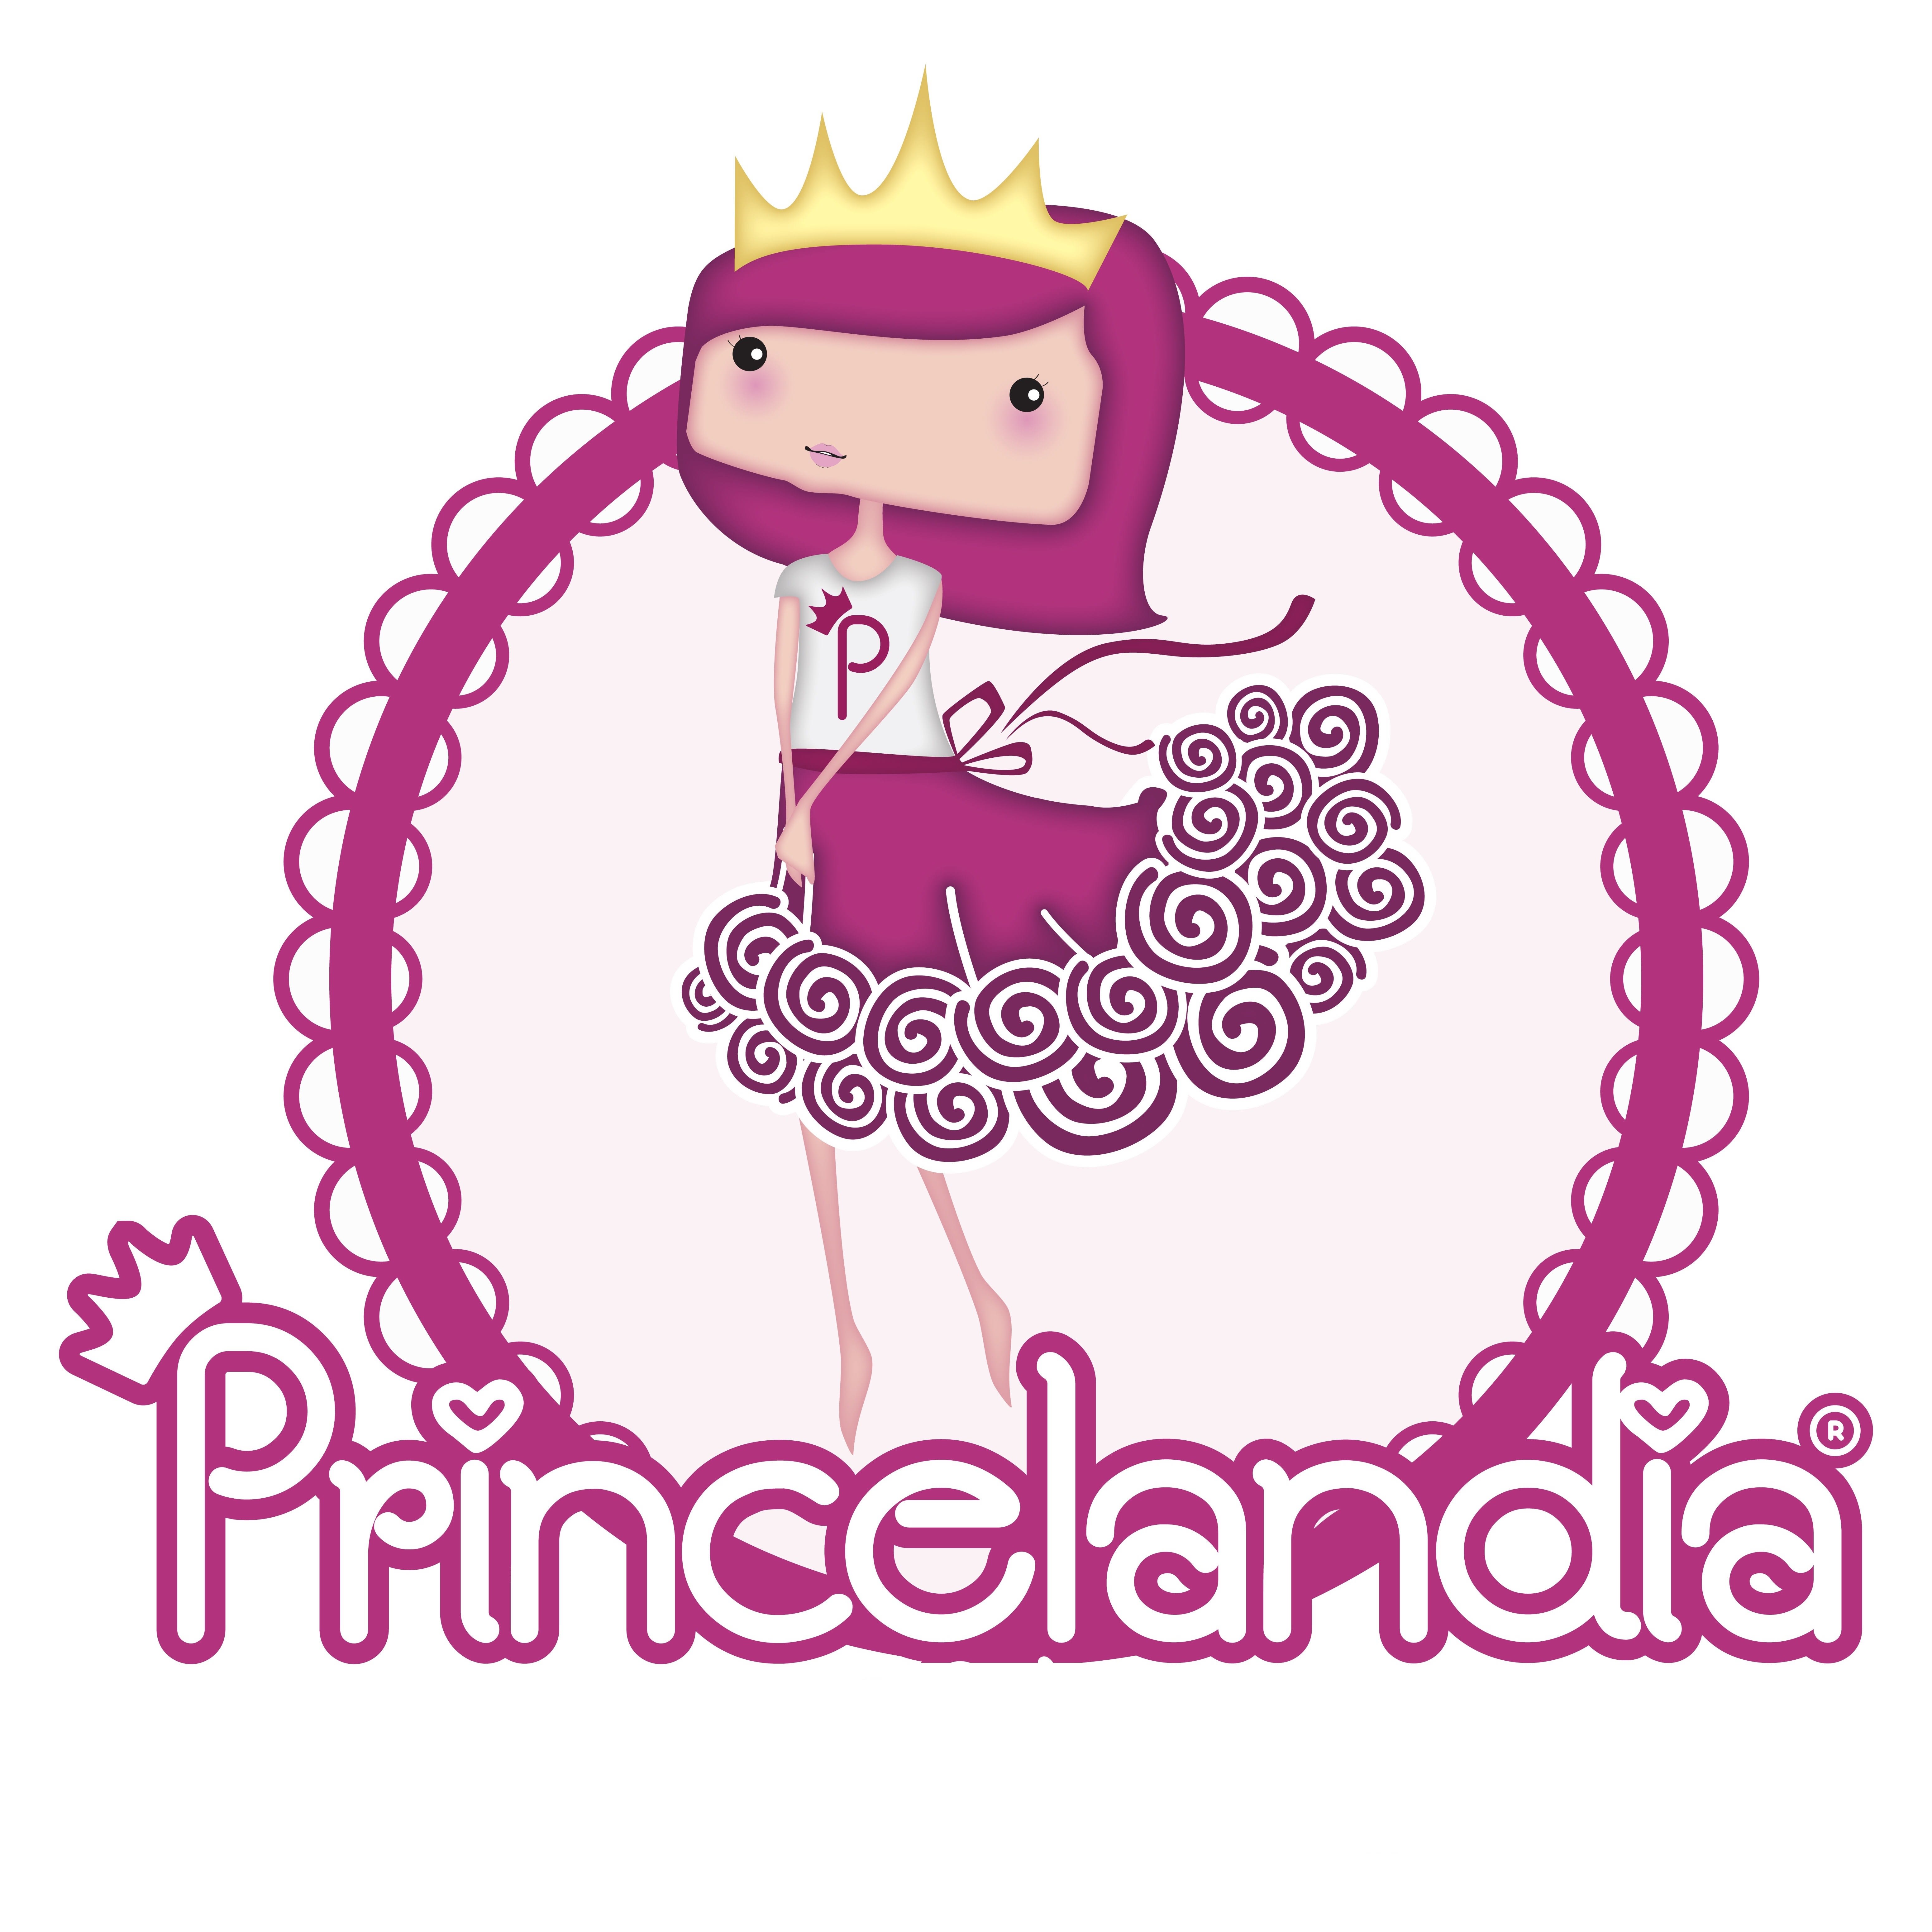 Princelandia Eventos Valencia